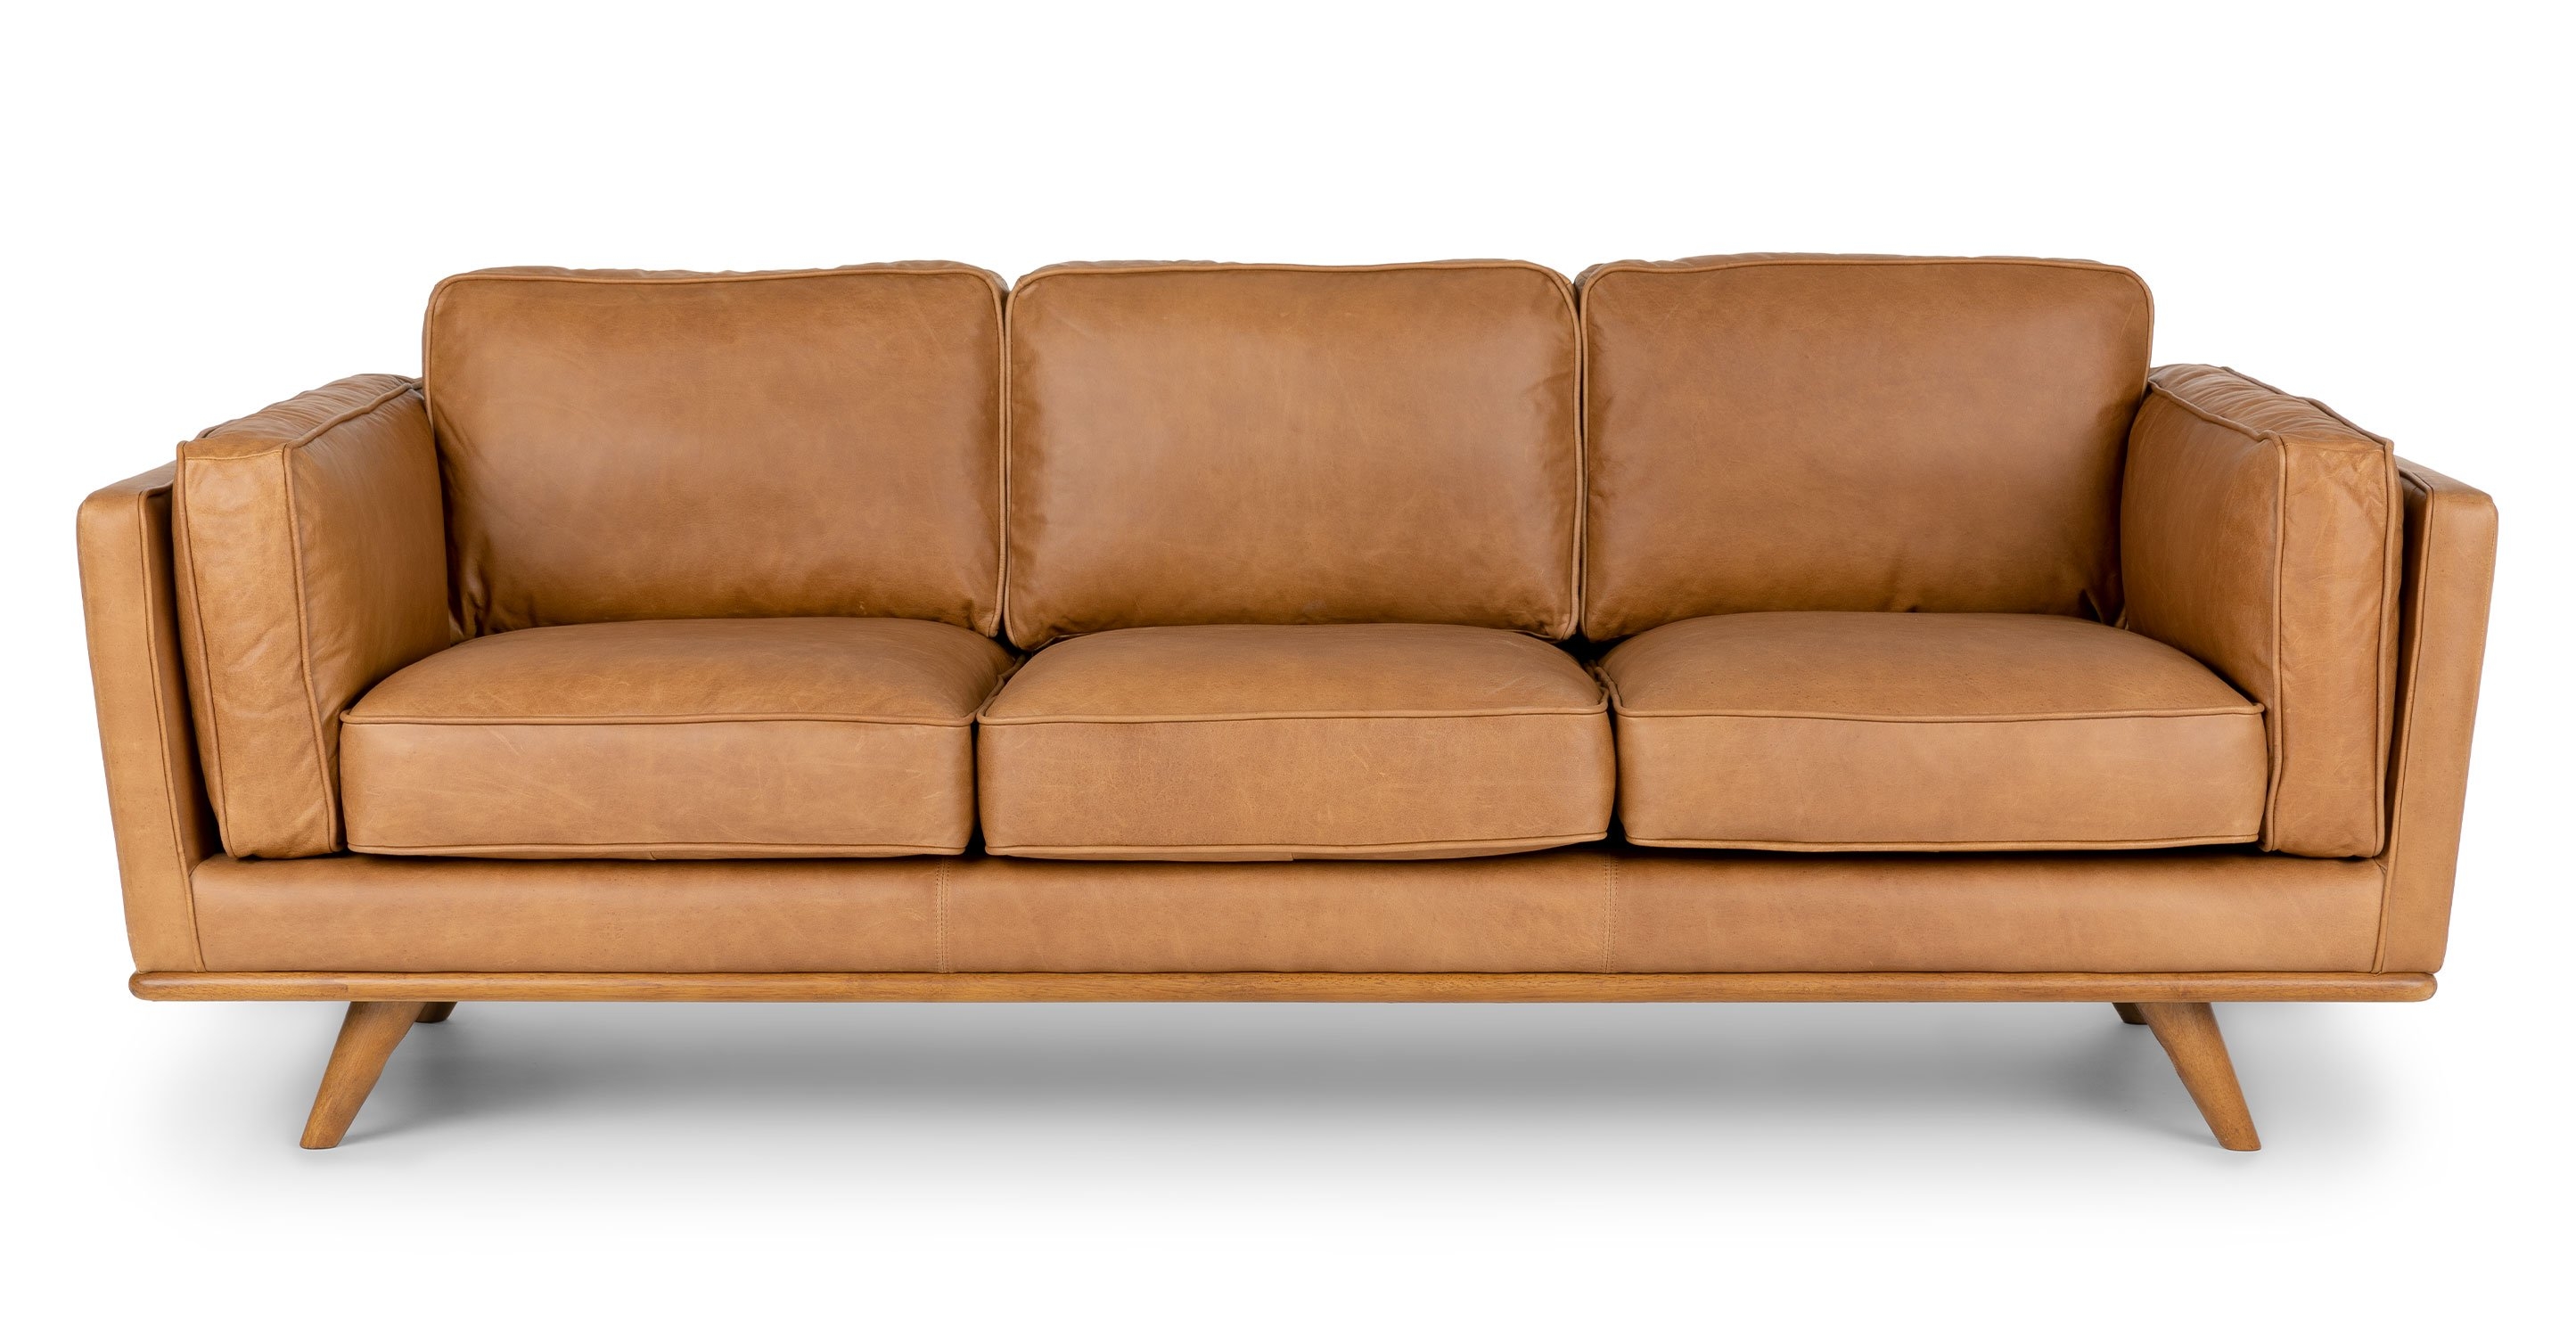 Timber Charme Tan Sofa - Image 5